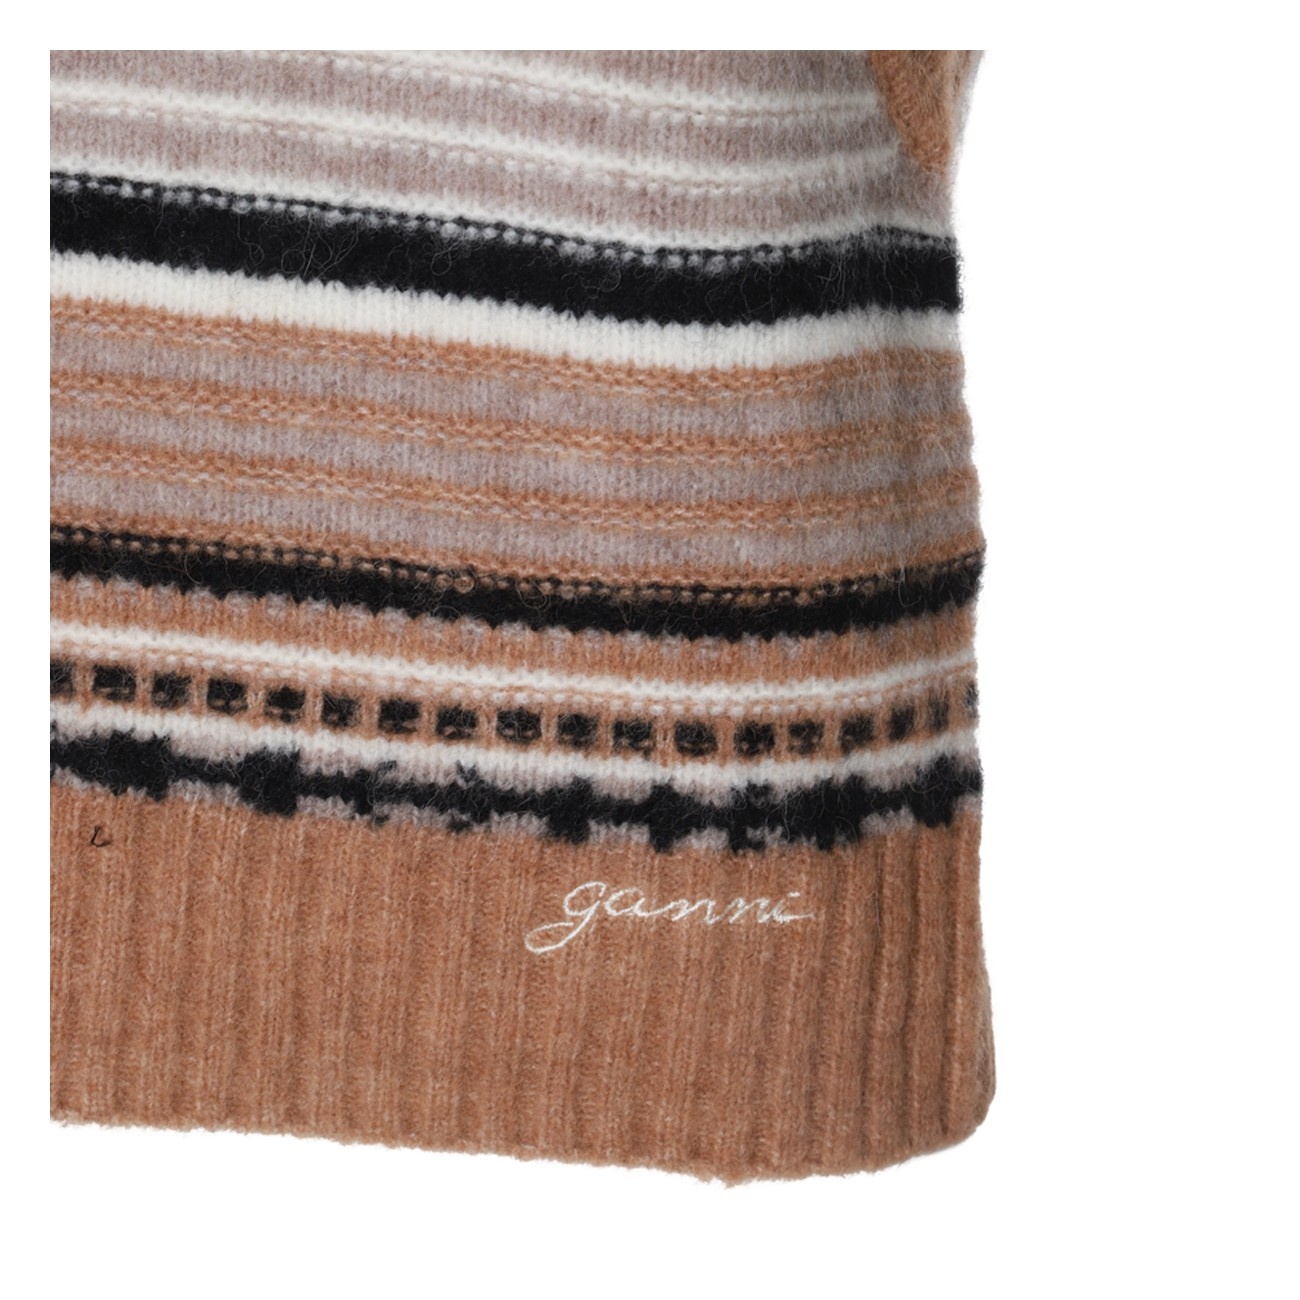 brown wool knitwear - 3